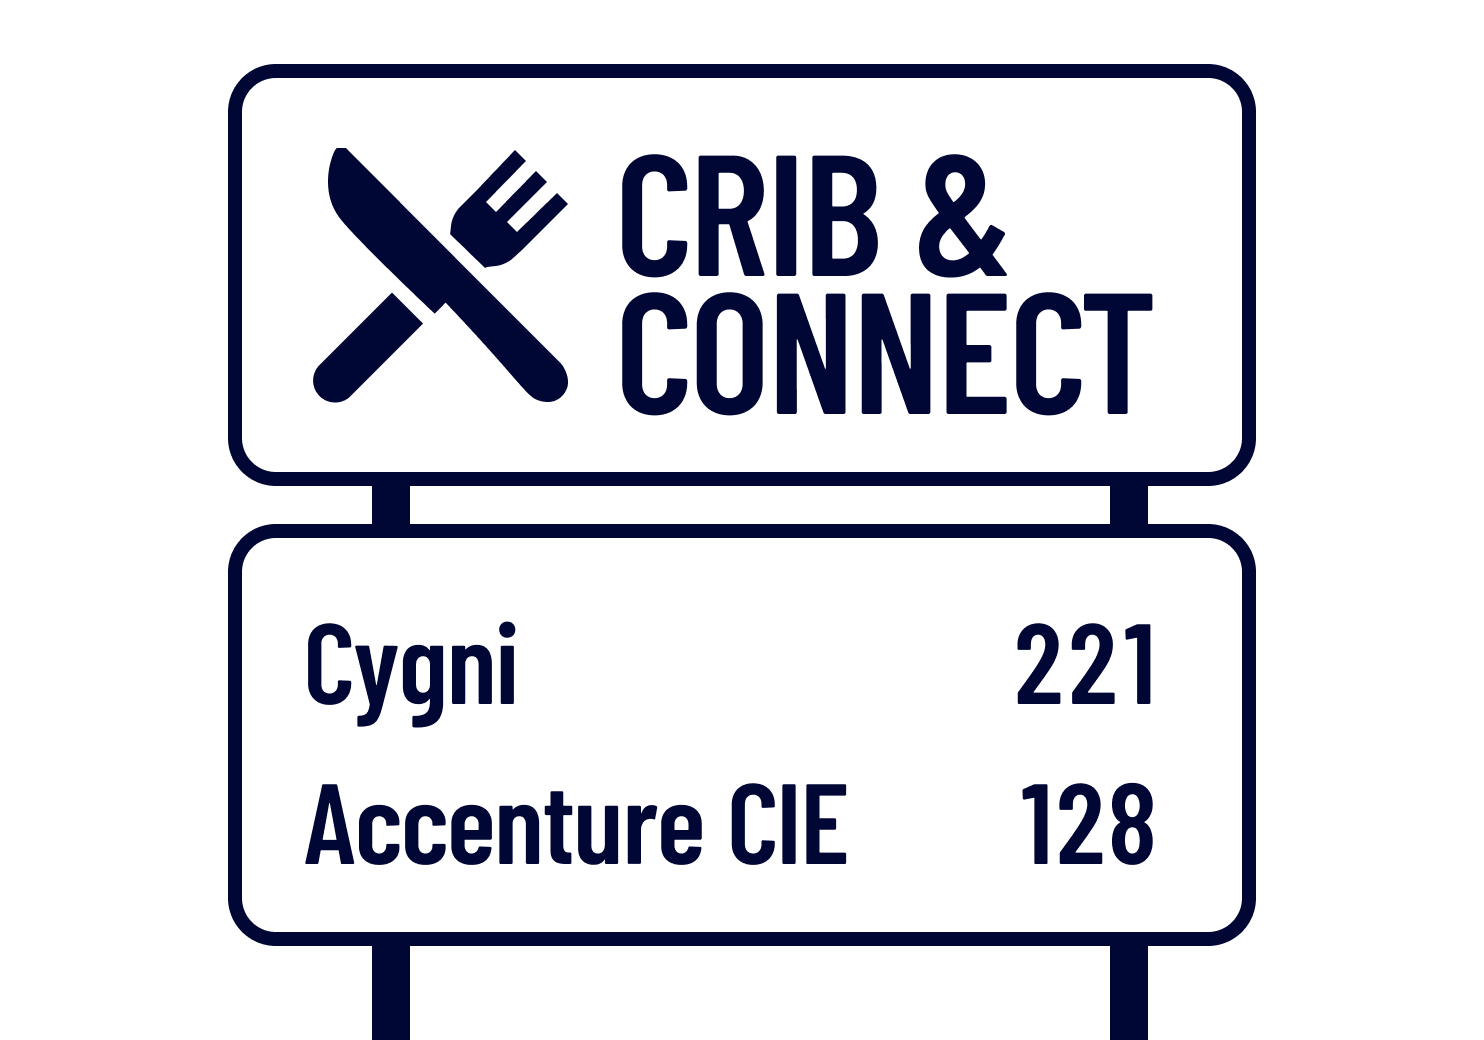 Crib & Connect